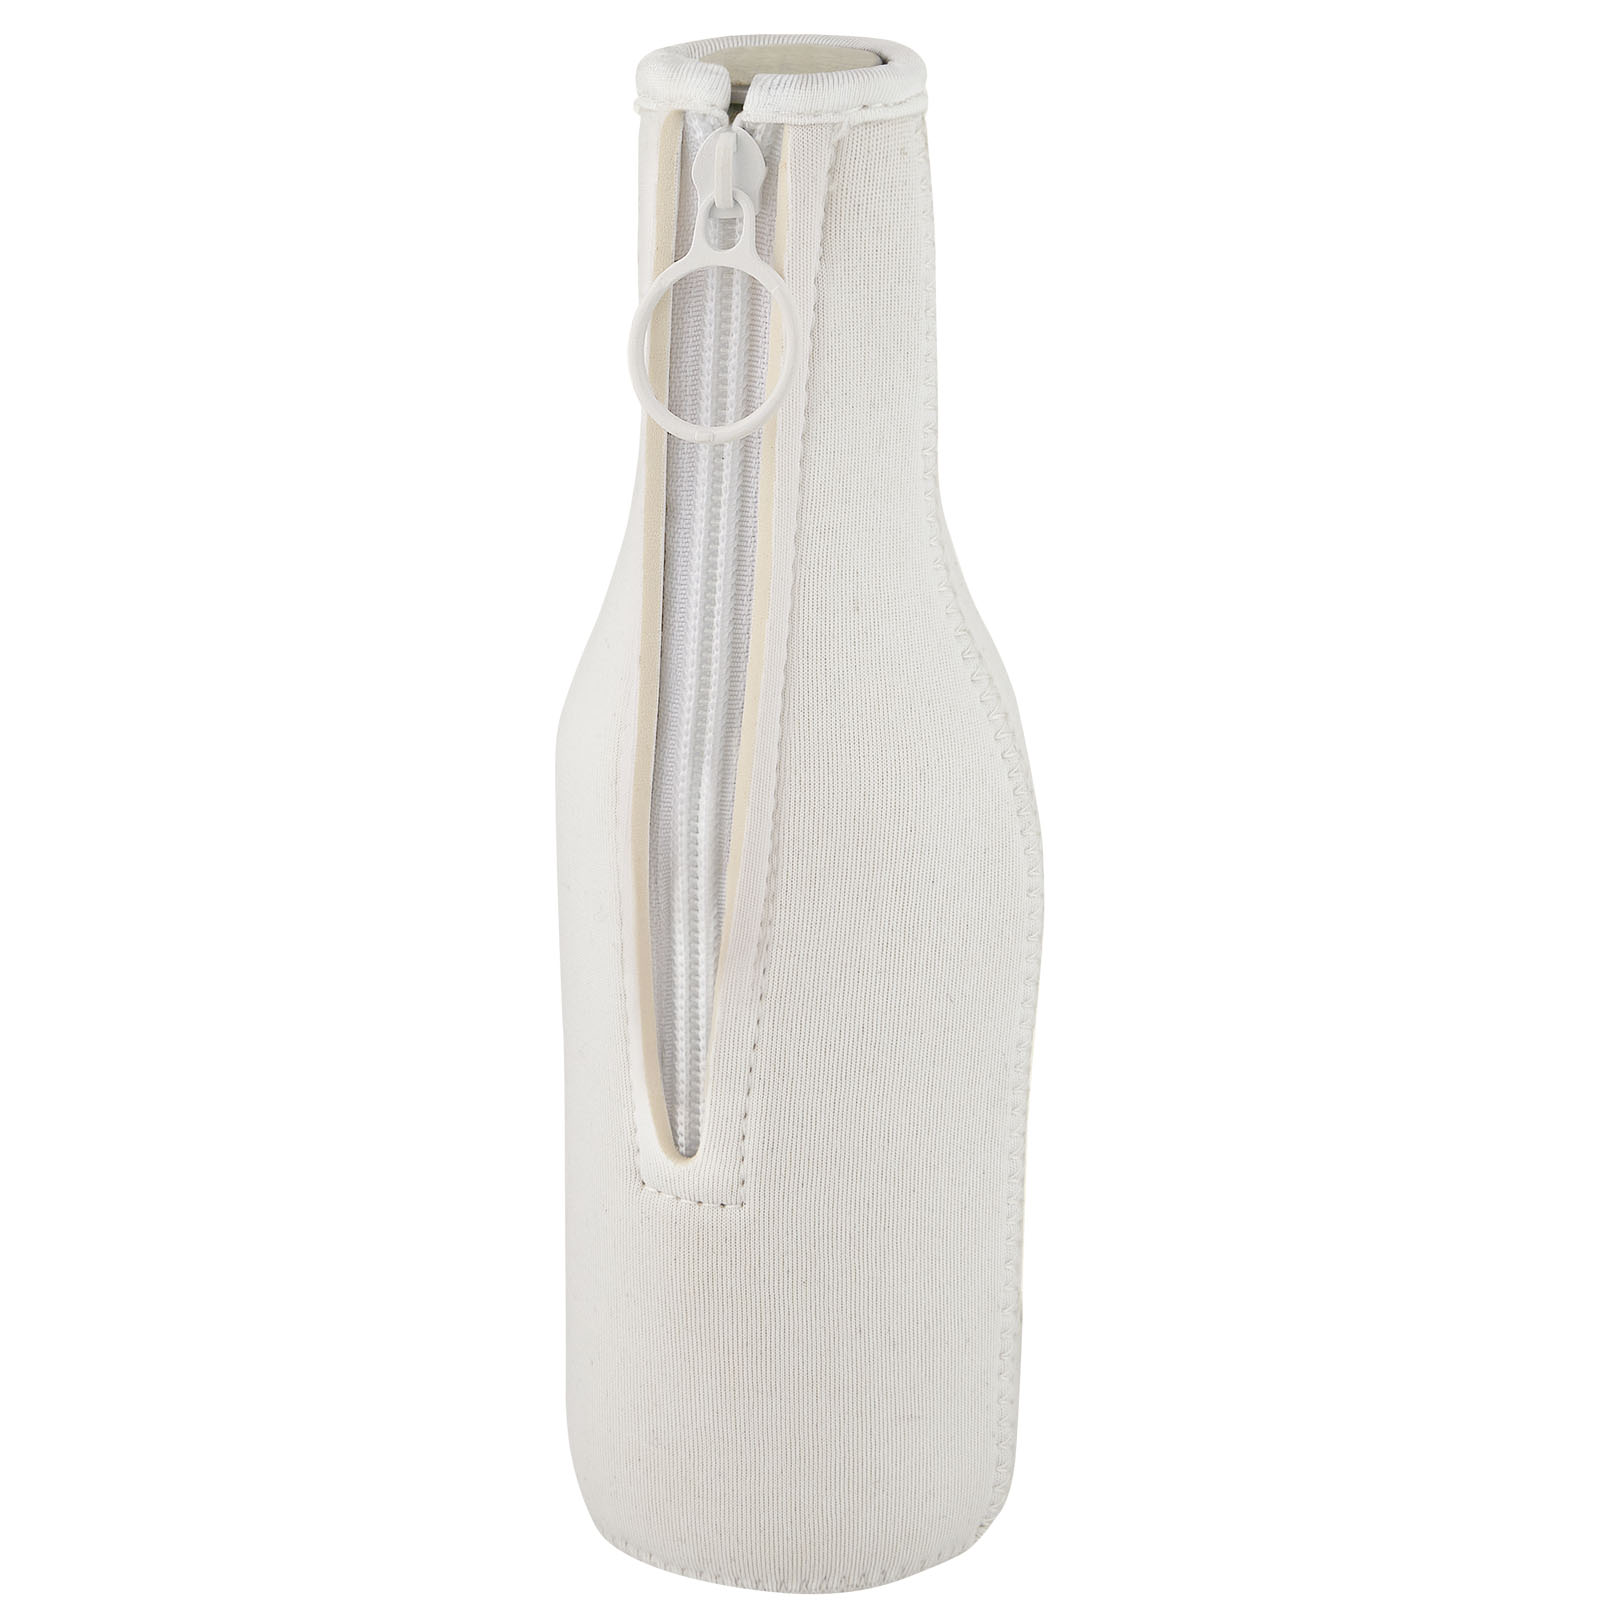 Bags - Fris recycled neoprene bottle sleeve holder